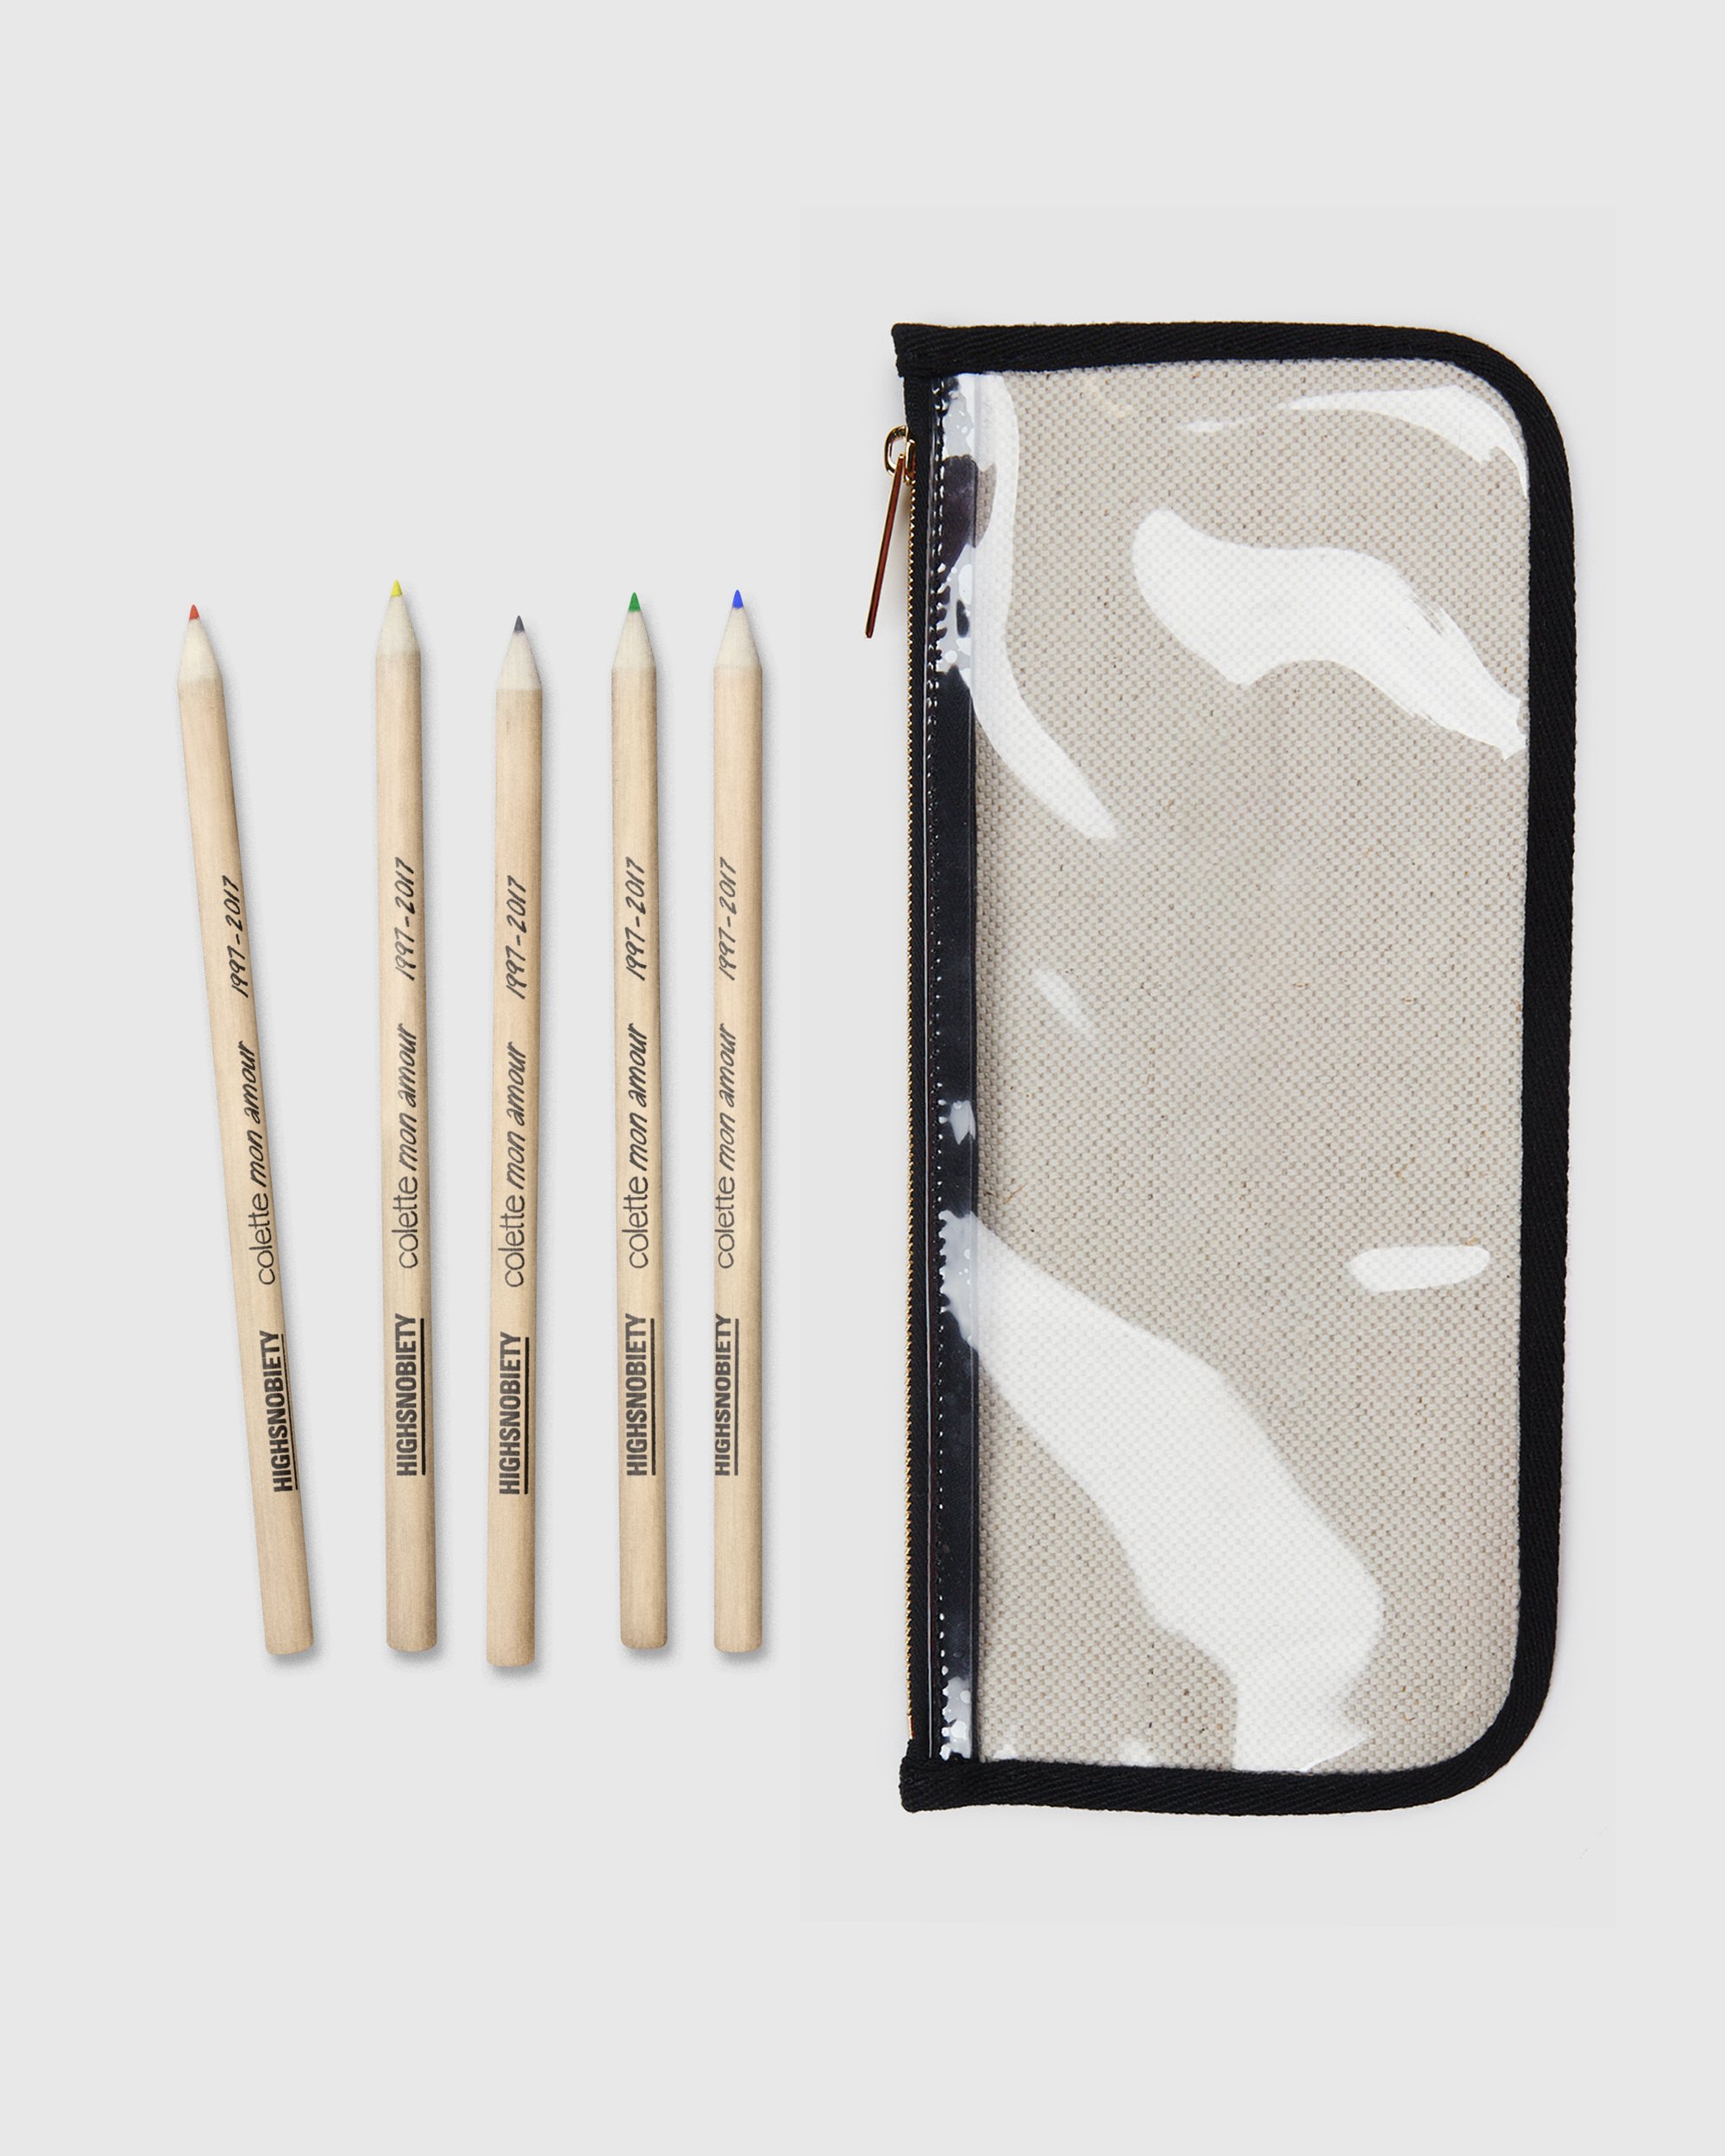 Colette Mon Amour - KAWS Beige Pencil Case - Desk Accessories - Beige - Image 4